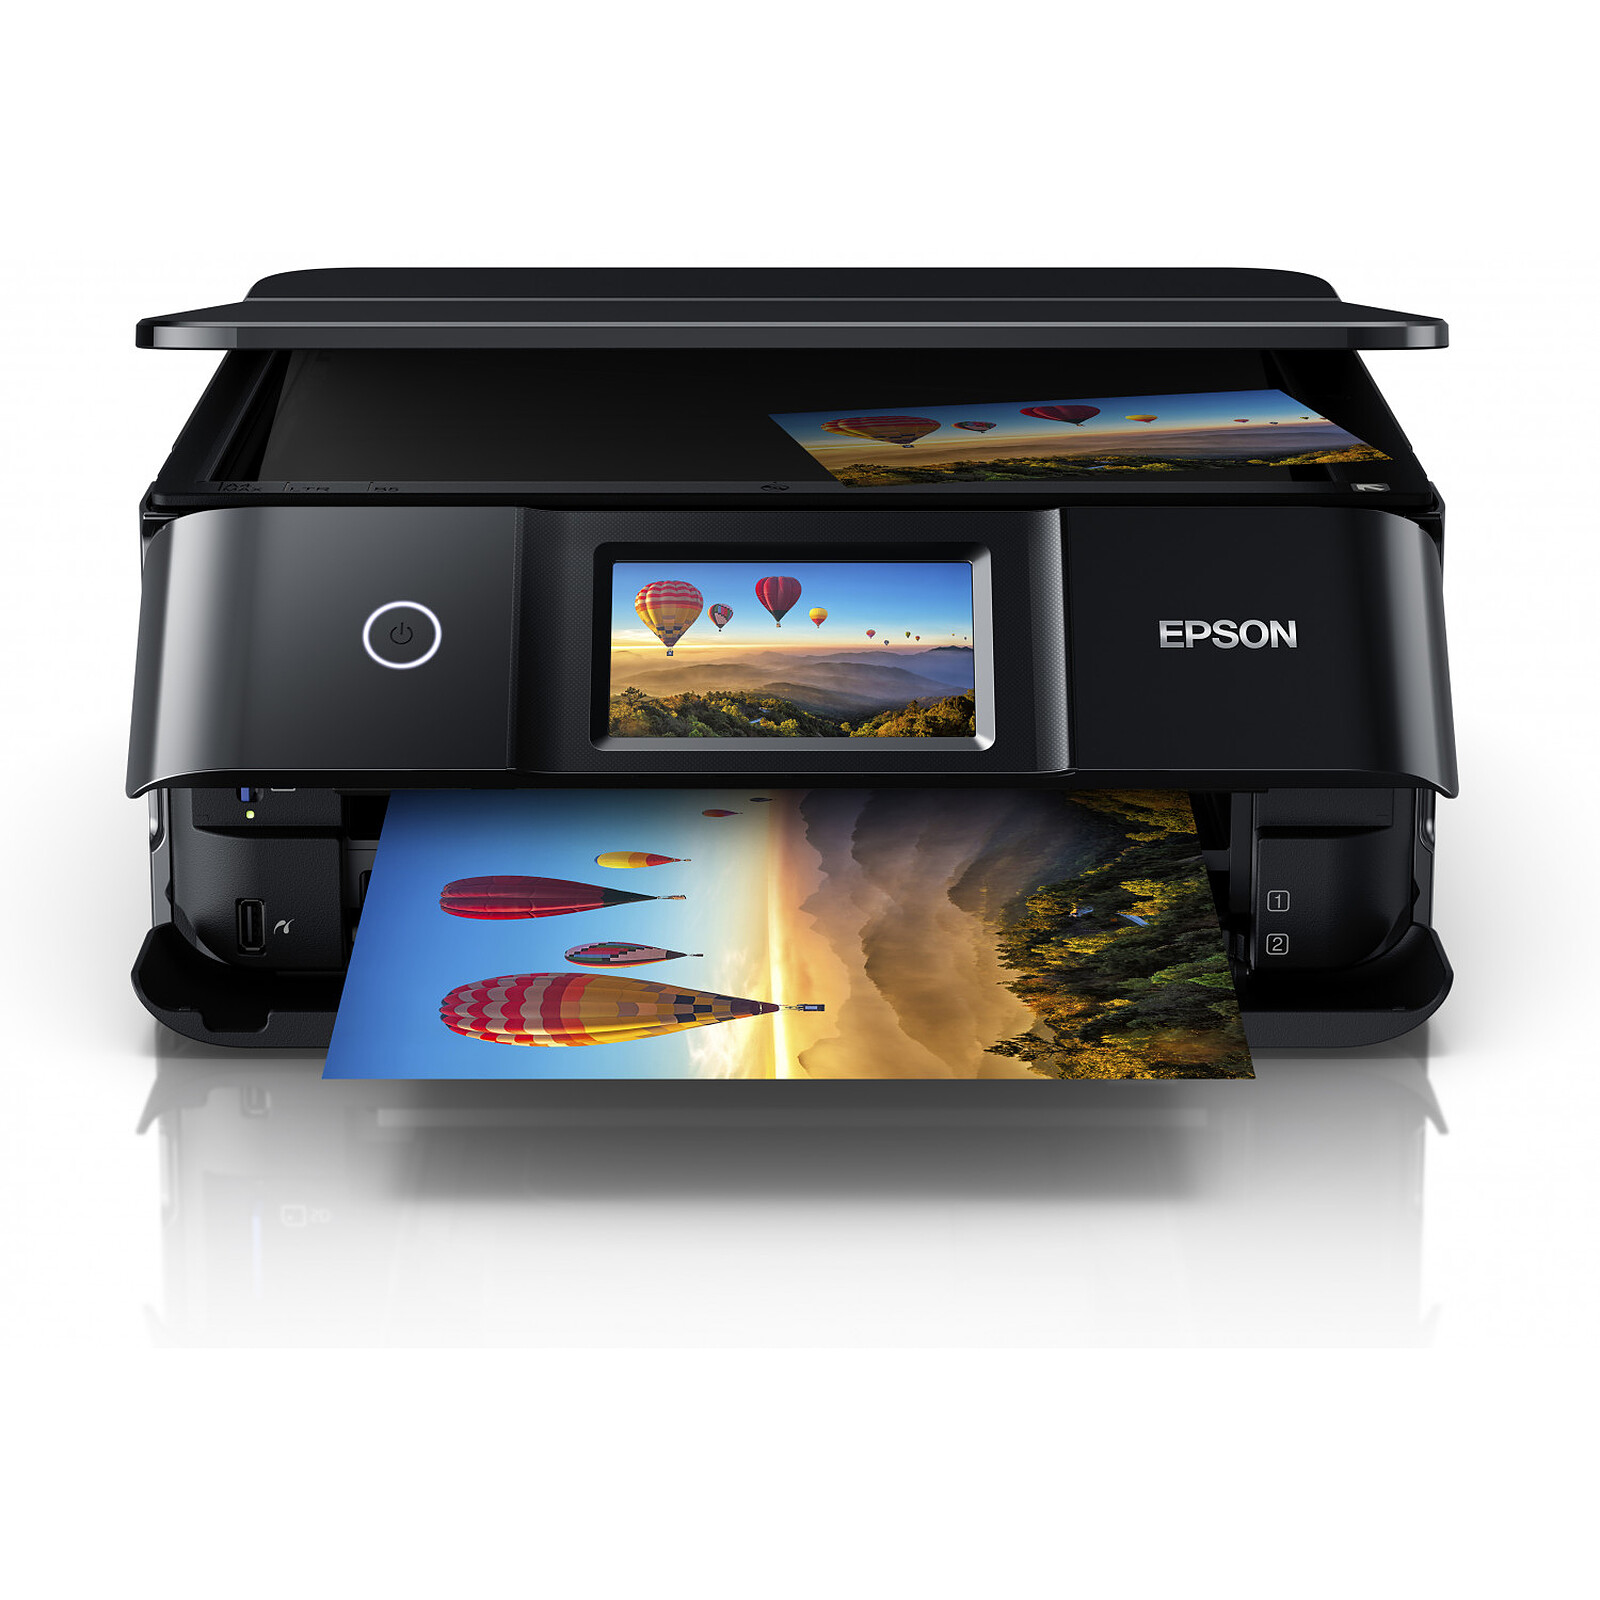 L'imprimante Epson XP-2200 multifonctions avec votre commande!